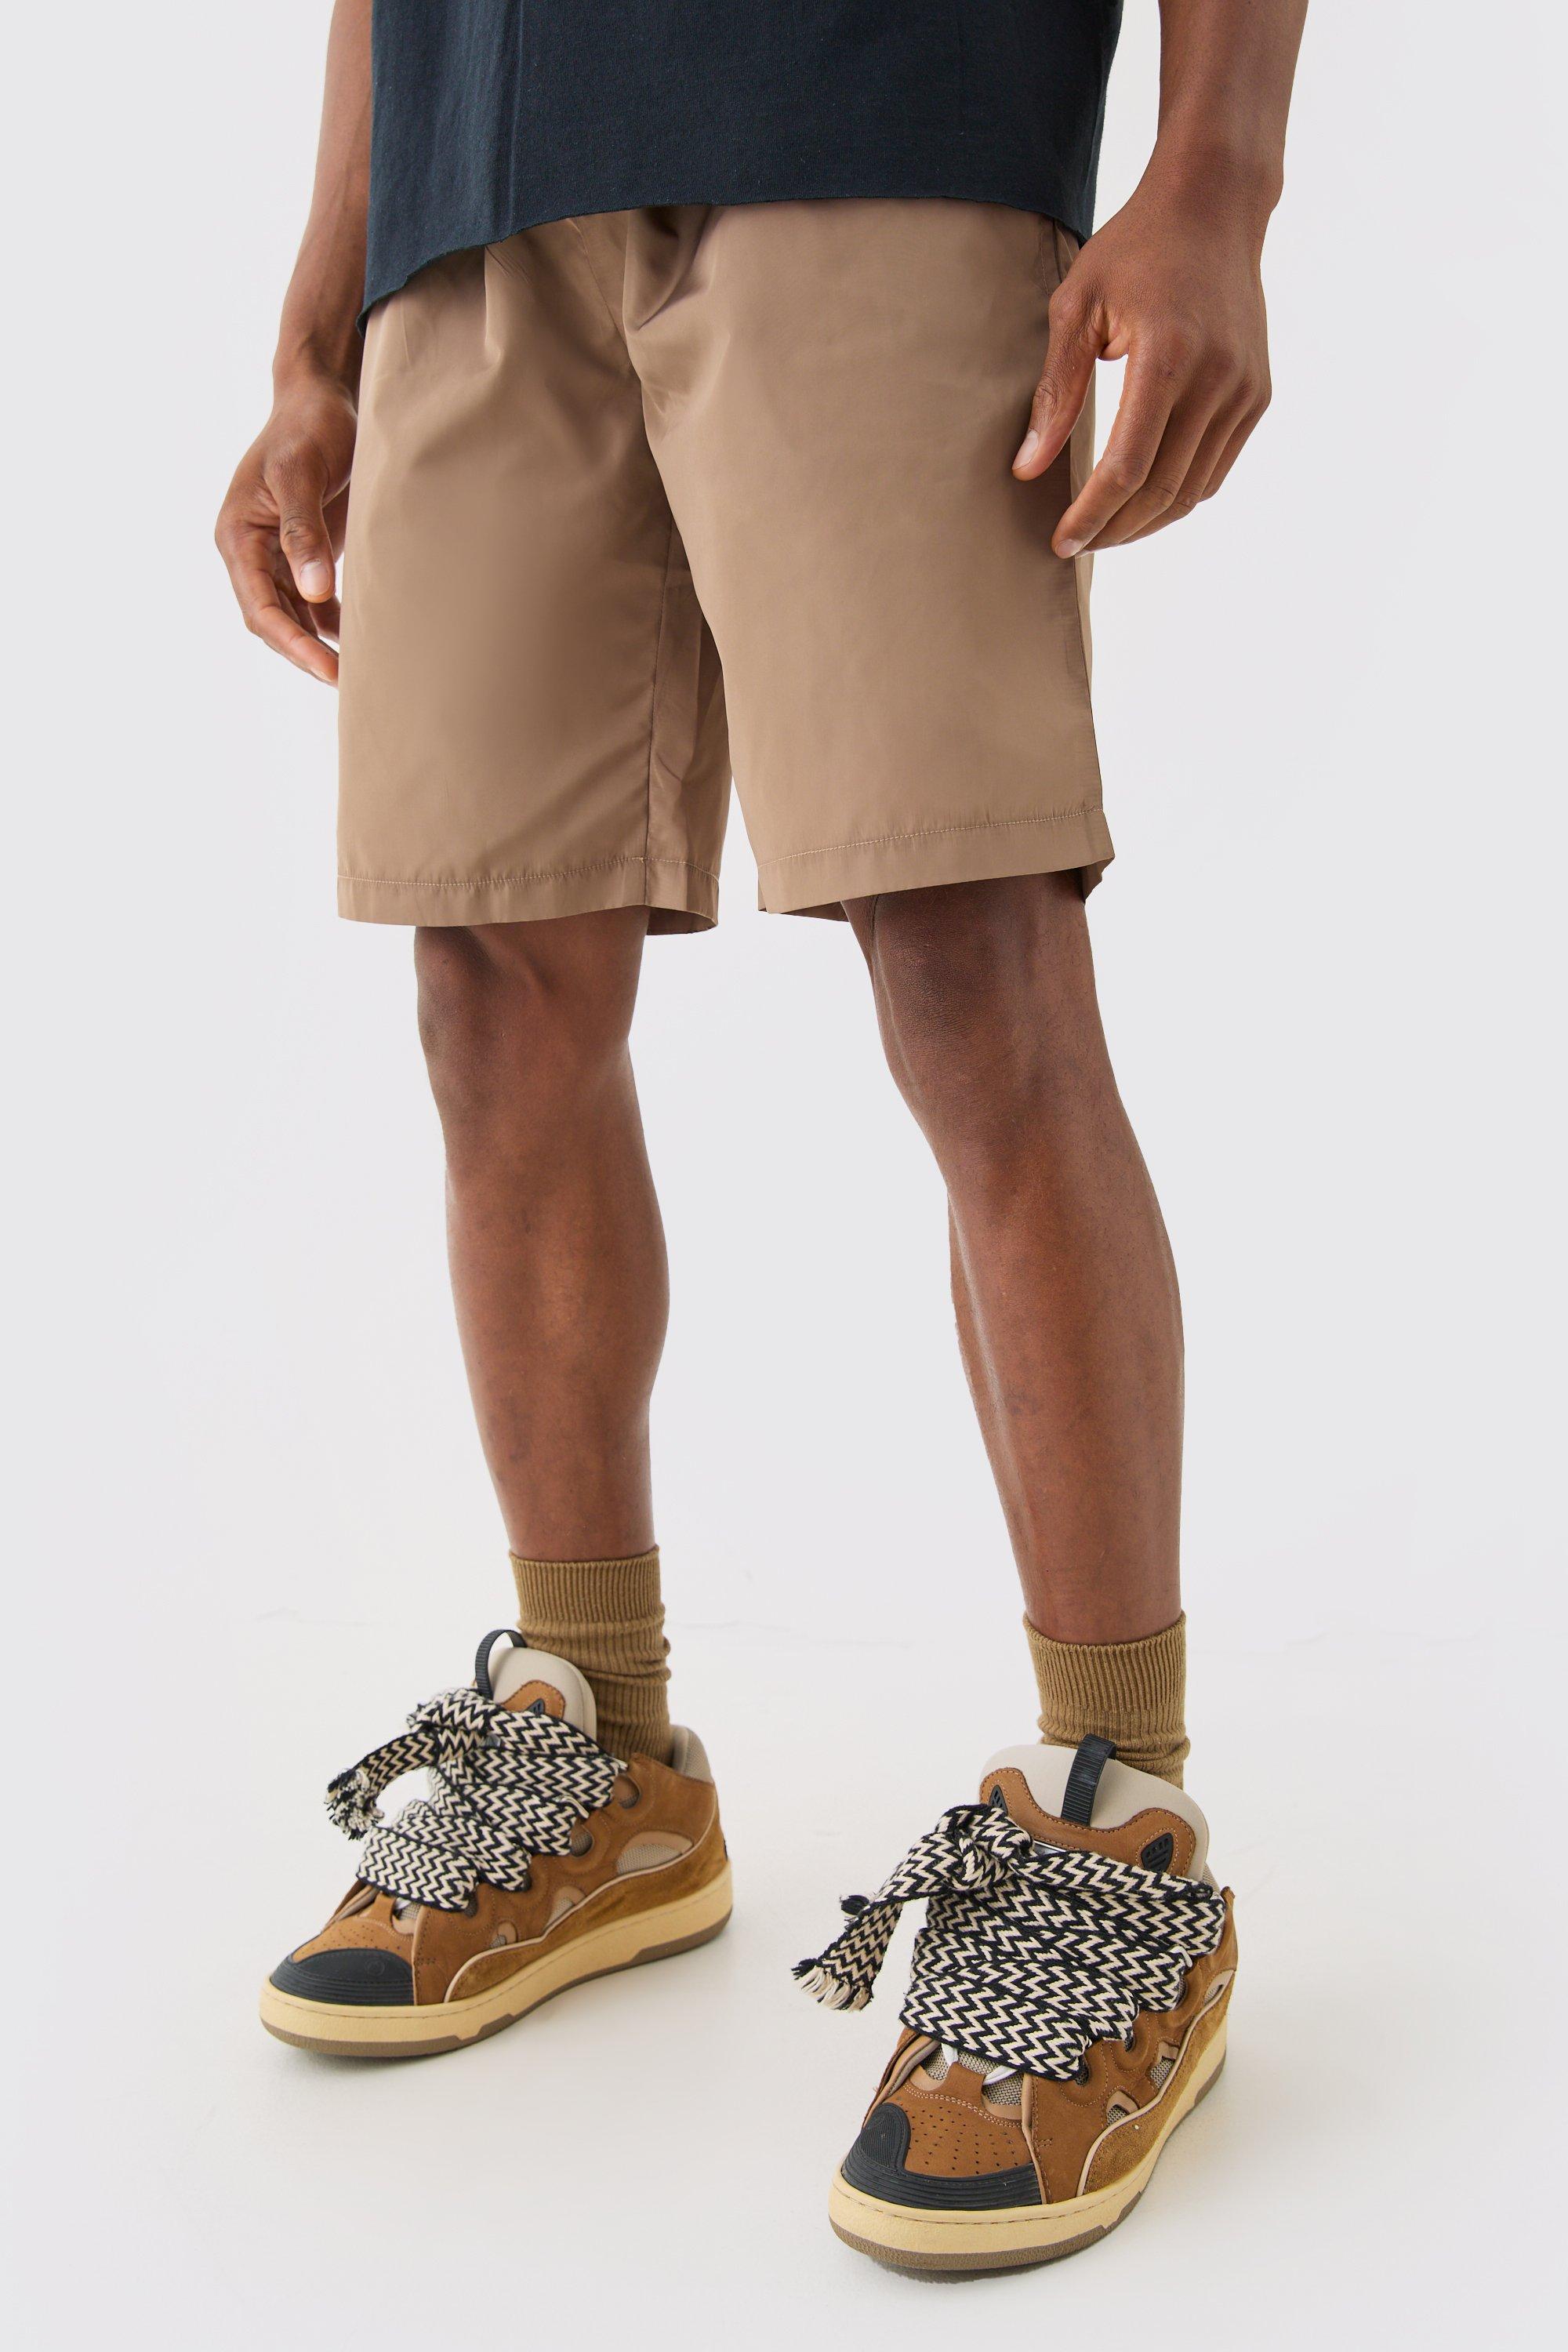 Image of Elasticated Waist Toggle Shorts, Beige